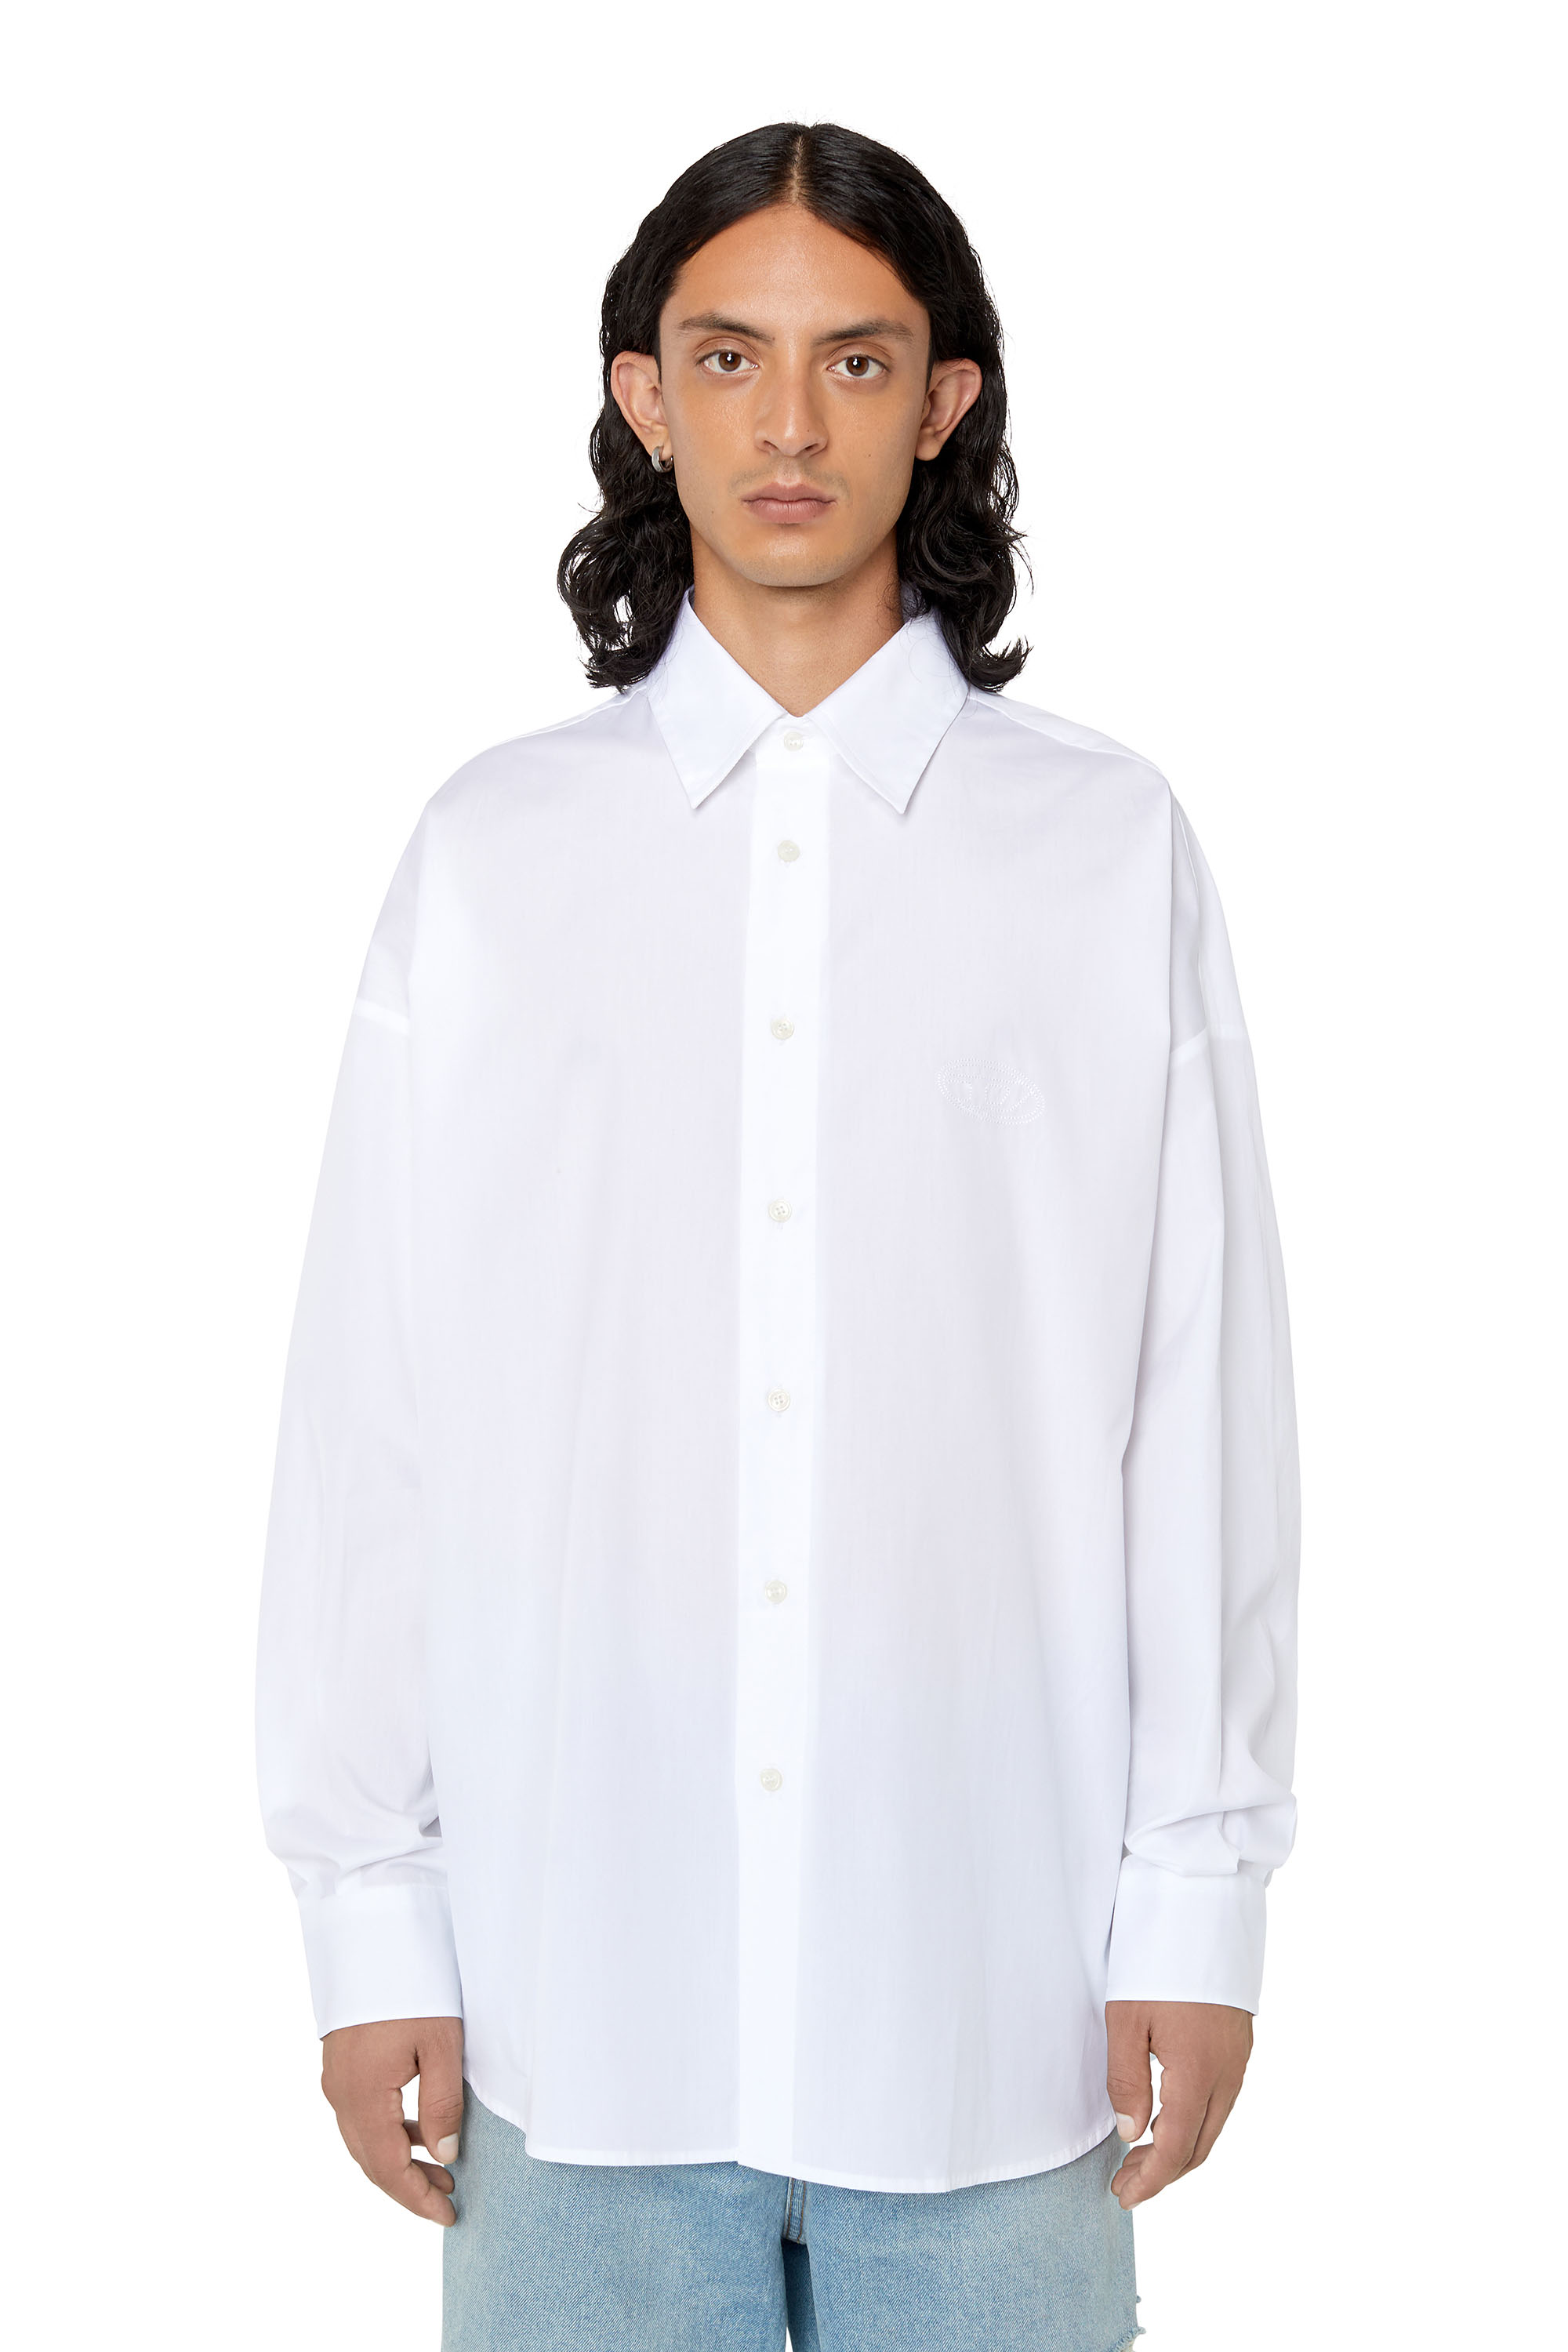 公式日本版 美品 オーバーサイズ ホワイトシャツ ディーゼル DIESEL 